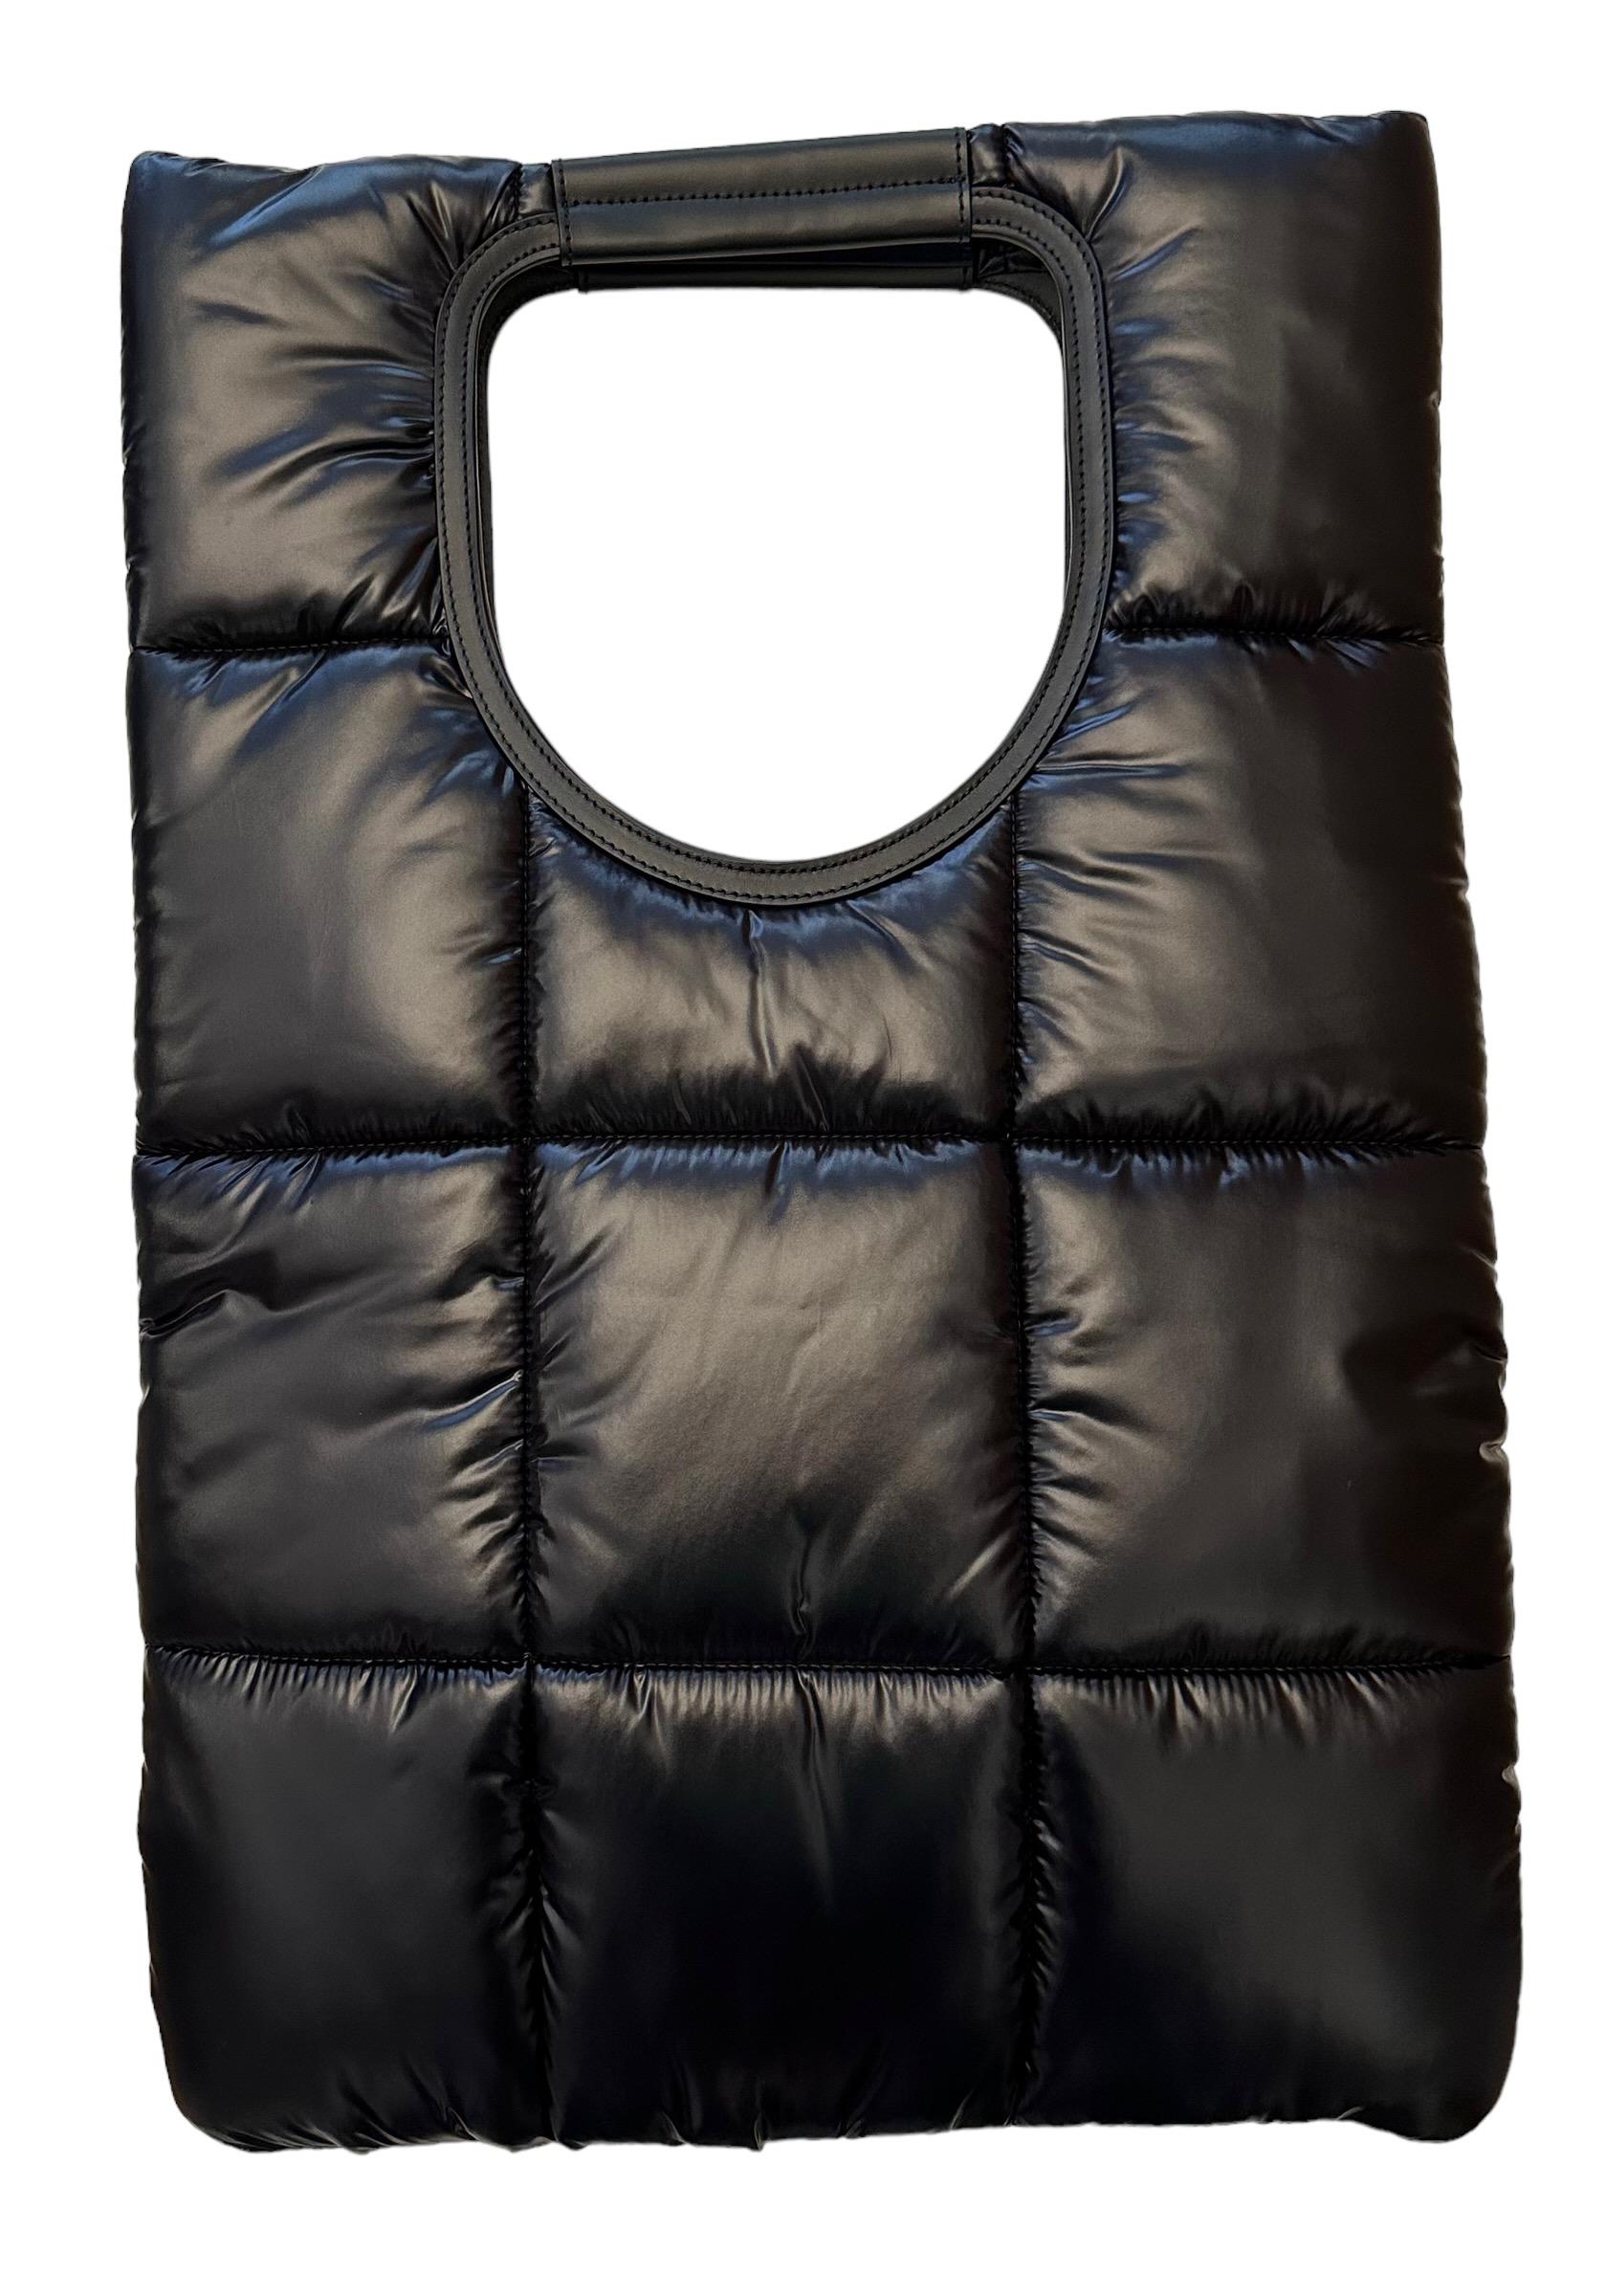 Diese neue gesteppte Puffy Bag aus zweiter Hand ist Teil der Alix Collection. 
Er ist aus schwarzem Nylon gefertigt und mit einer gesteppten, gepolsterten Oberfläche versehen. Die Besätze sind aus schwarzem Kalbsleder gefertigt.
Sie verfügt über